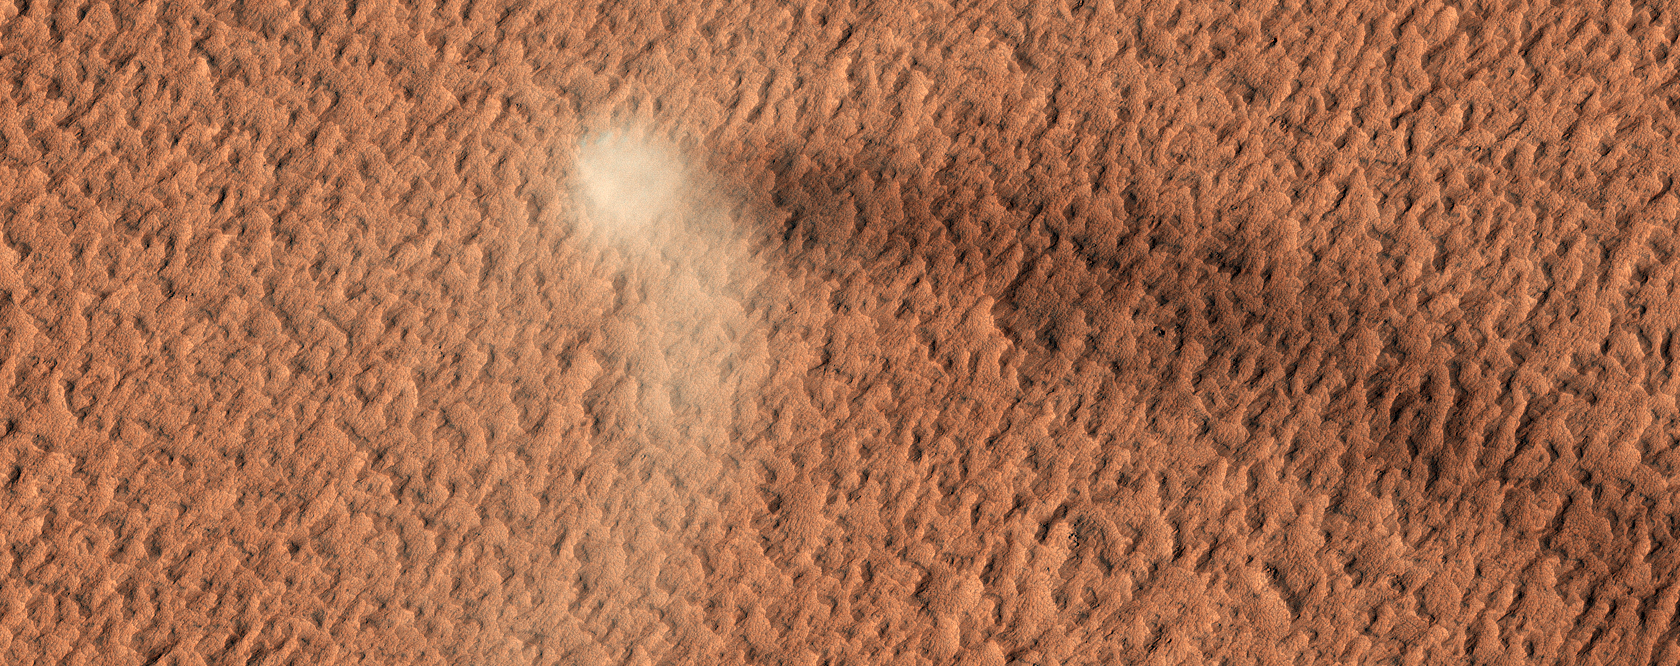 Tempête de sable sur la planète Mars